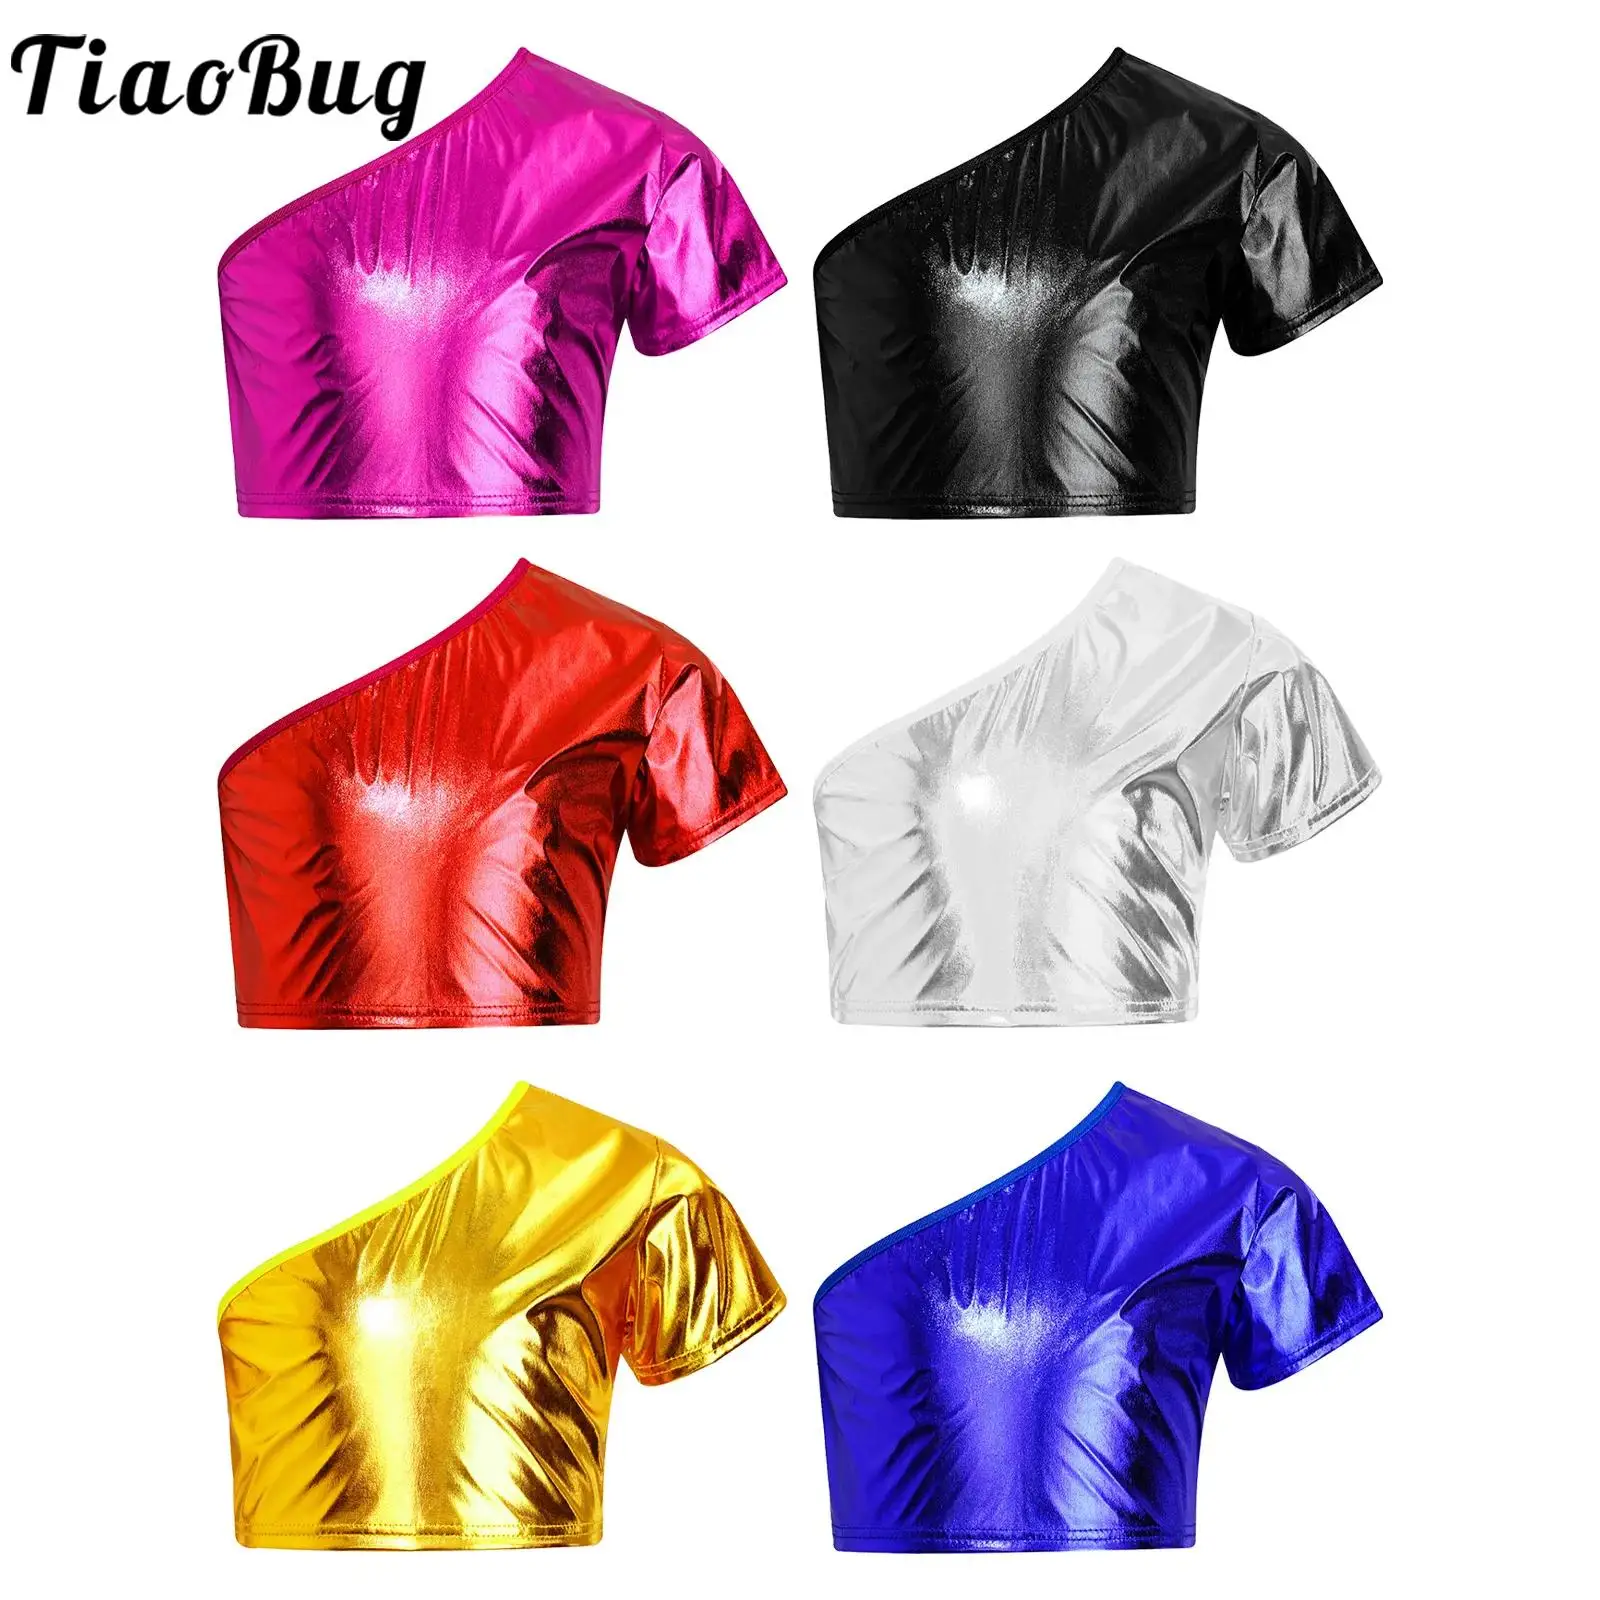 

TiaoBug Kids Girls Dancewear Top One Shoulder Metallic Crop Top Short Sleeve T-shirt for Jazz Dance Cheerleading Performance